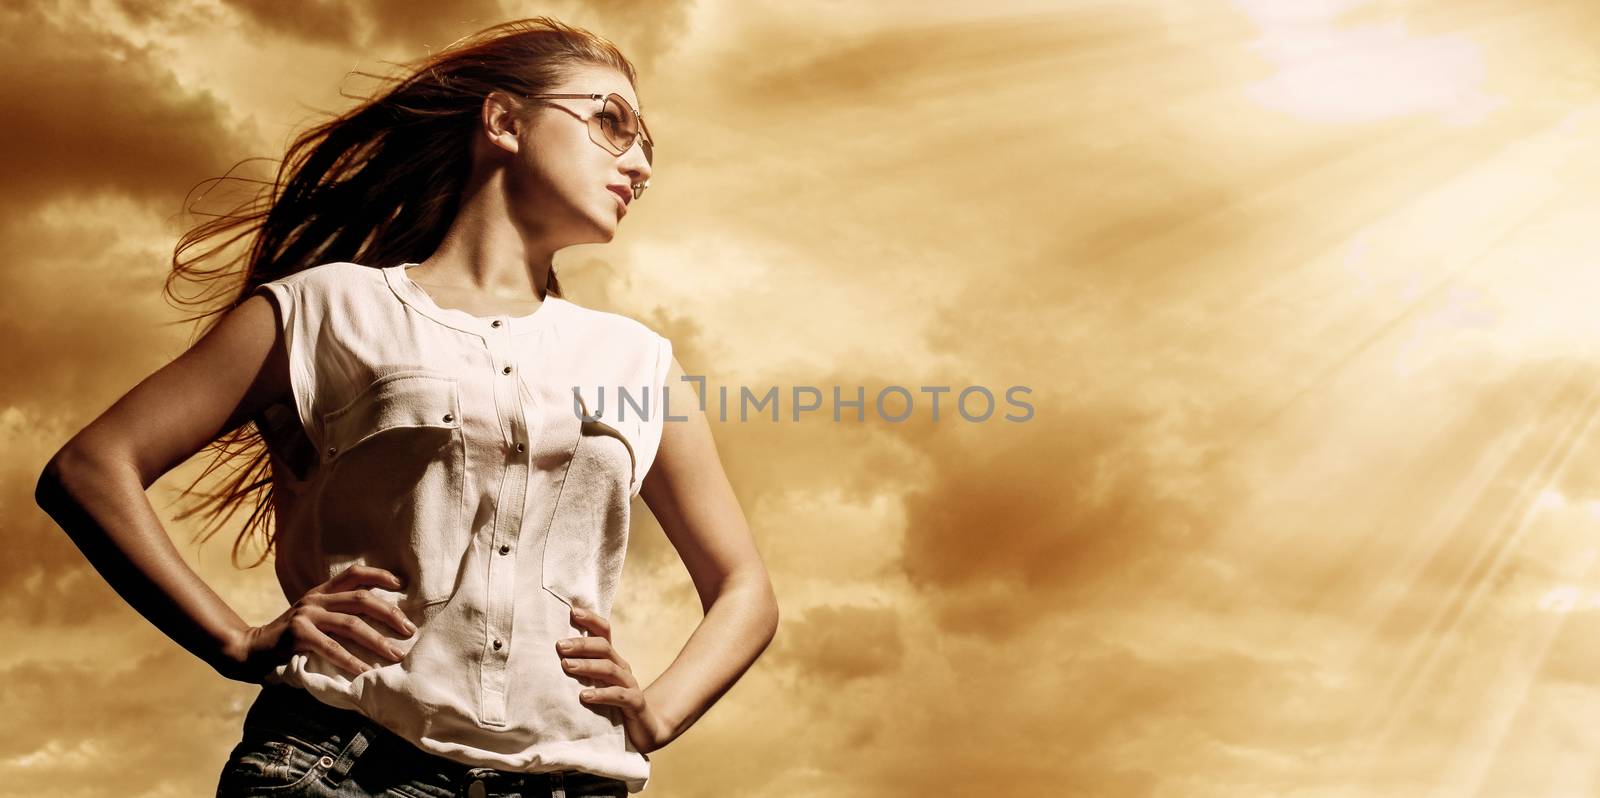 Beautiful woman over sky background by rufatjumali